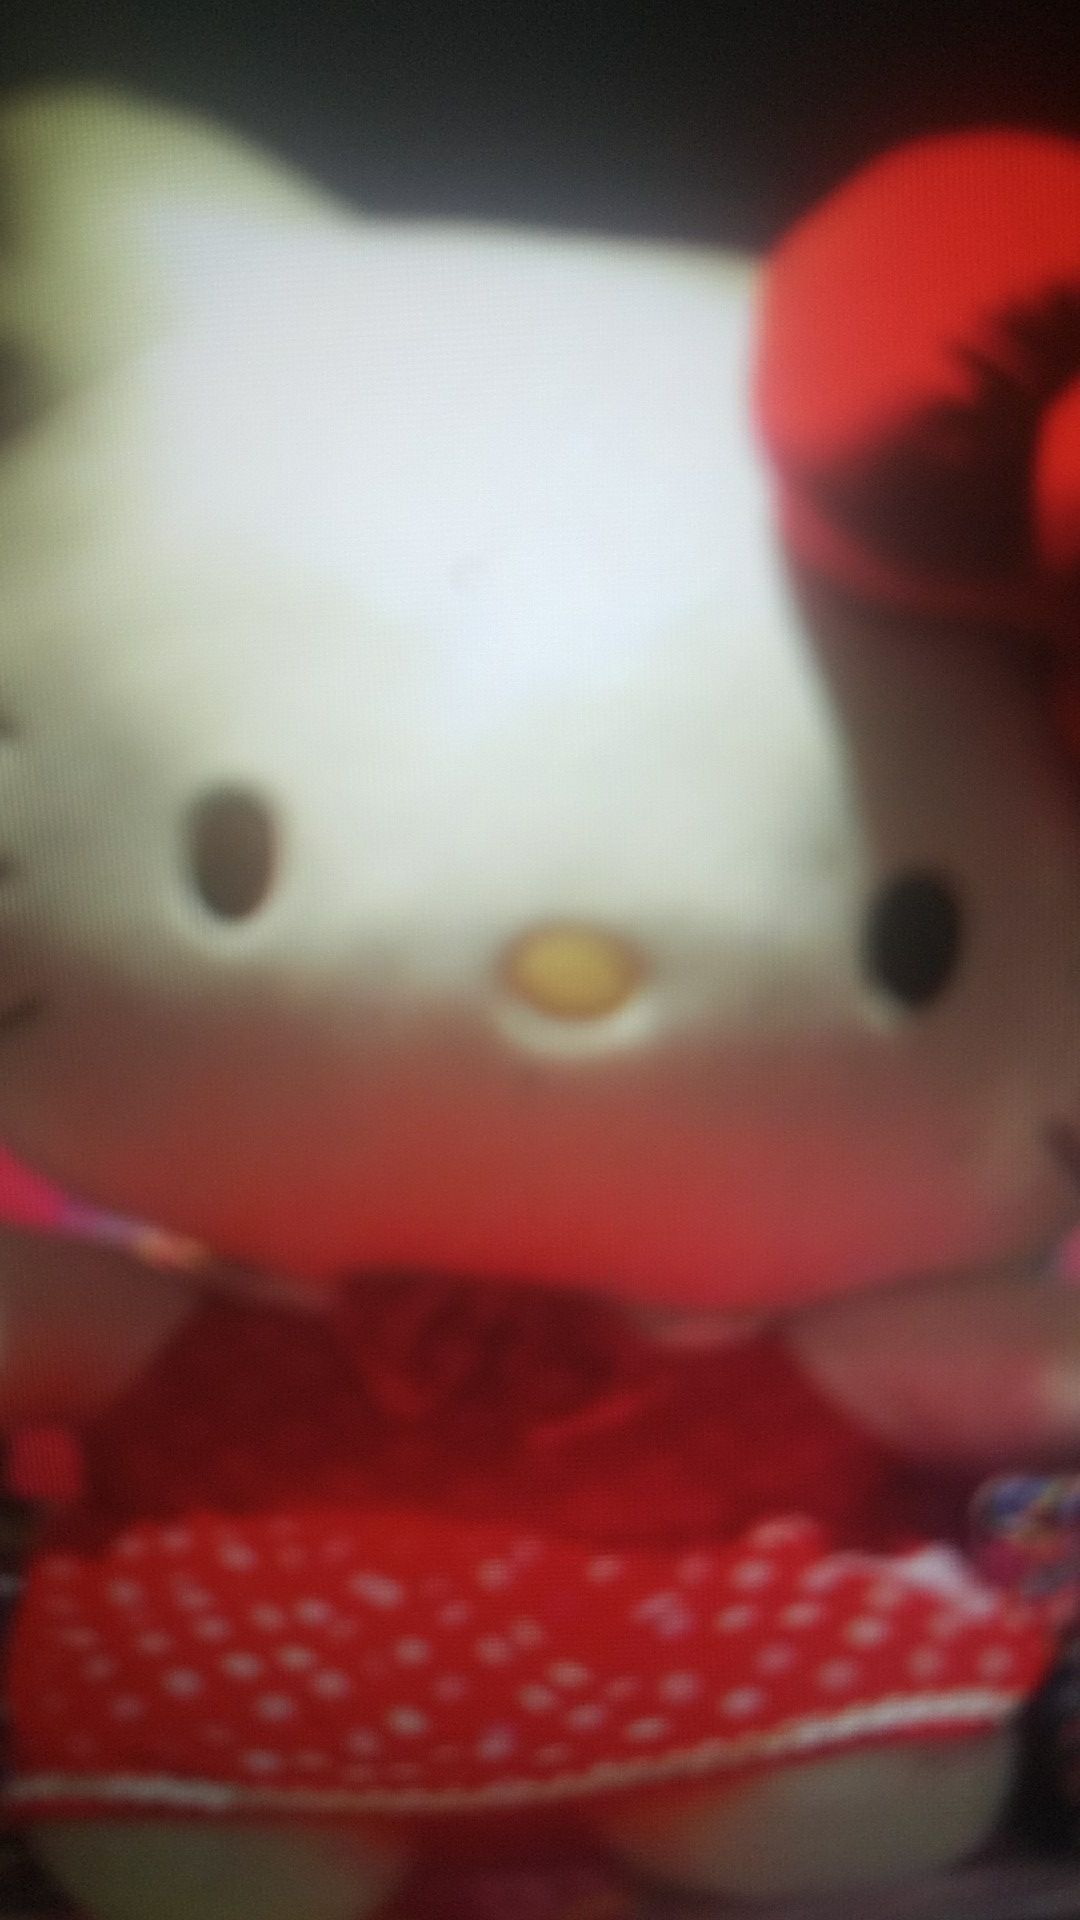 Hello Kitty, huge Hello Kitty stuffed animal